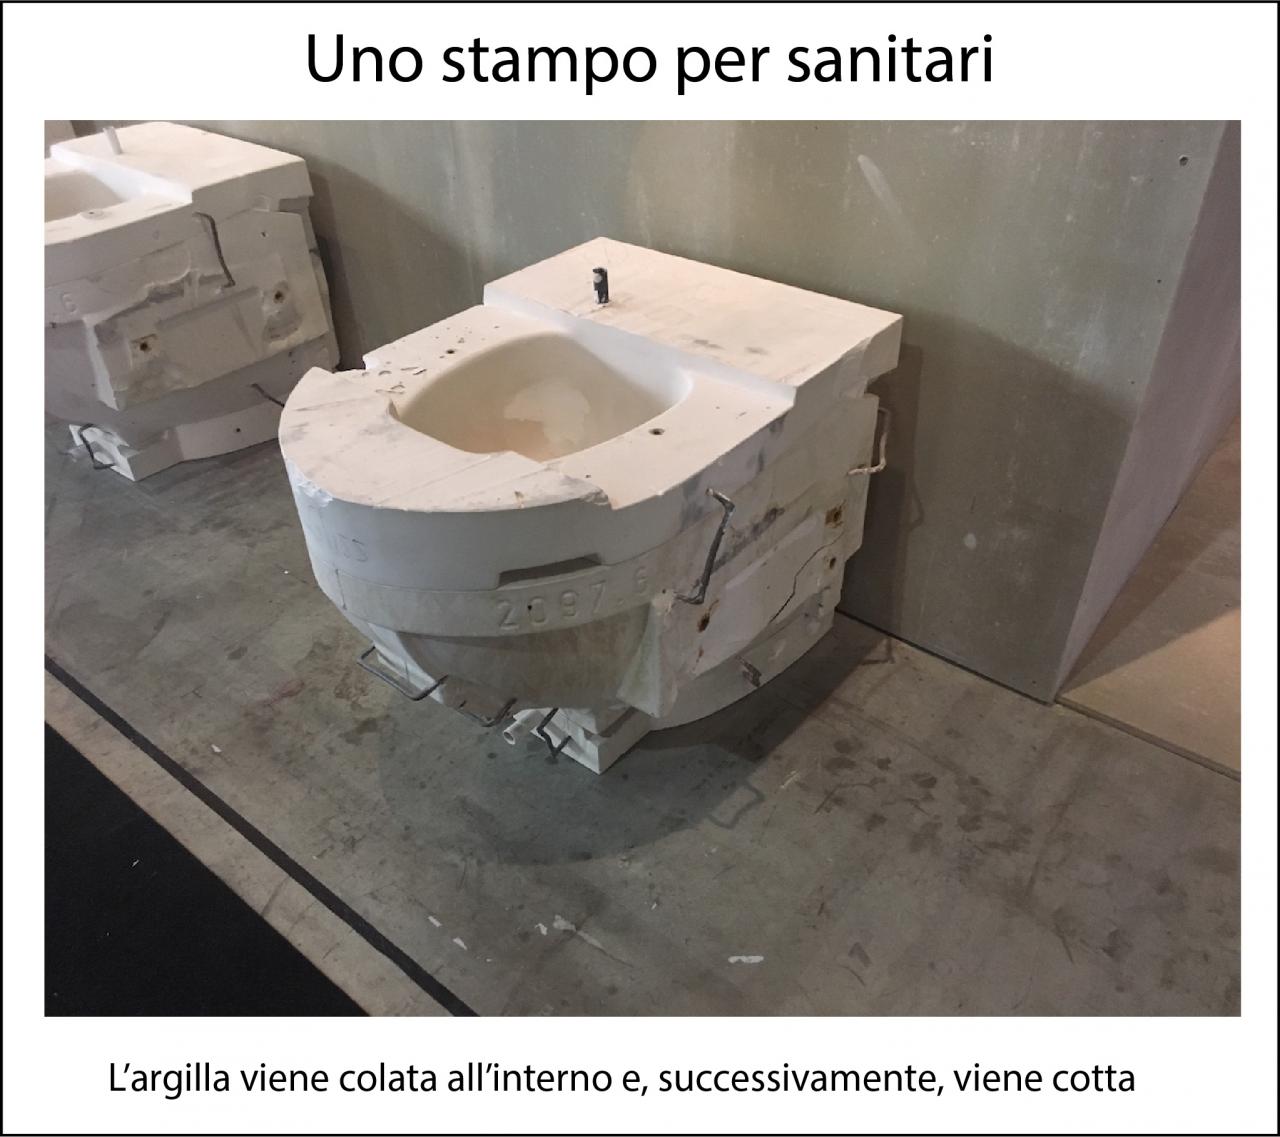 Negozio di sanitari a Vicenza, Pellizzari. Bidet e WC.